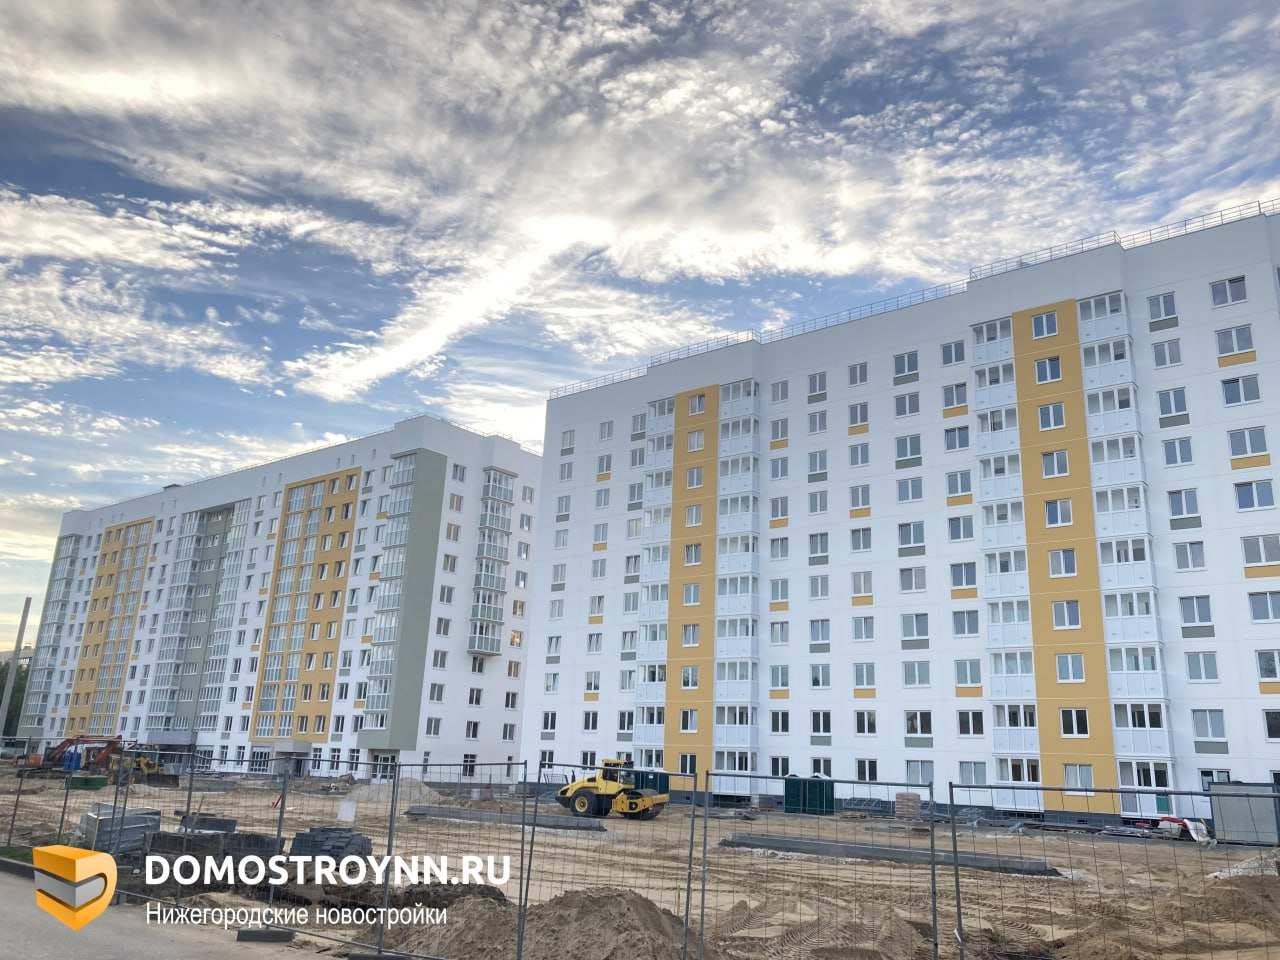 Около 7 га выделят на строительство домов для расселения в Нижнем Новгороде - фото 1